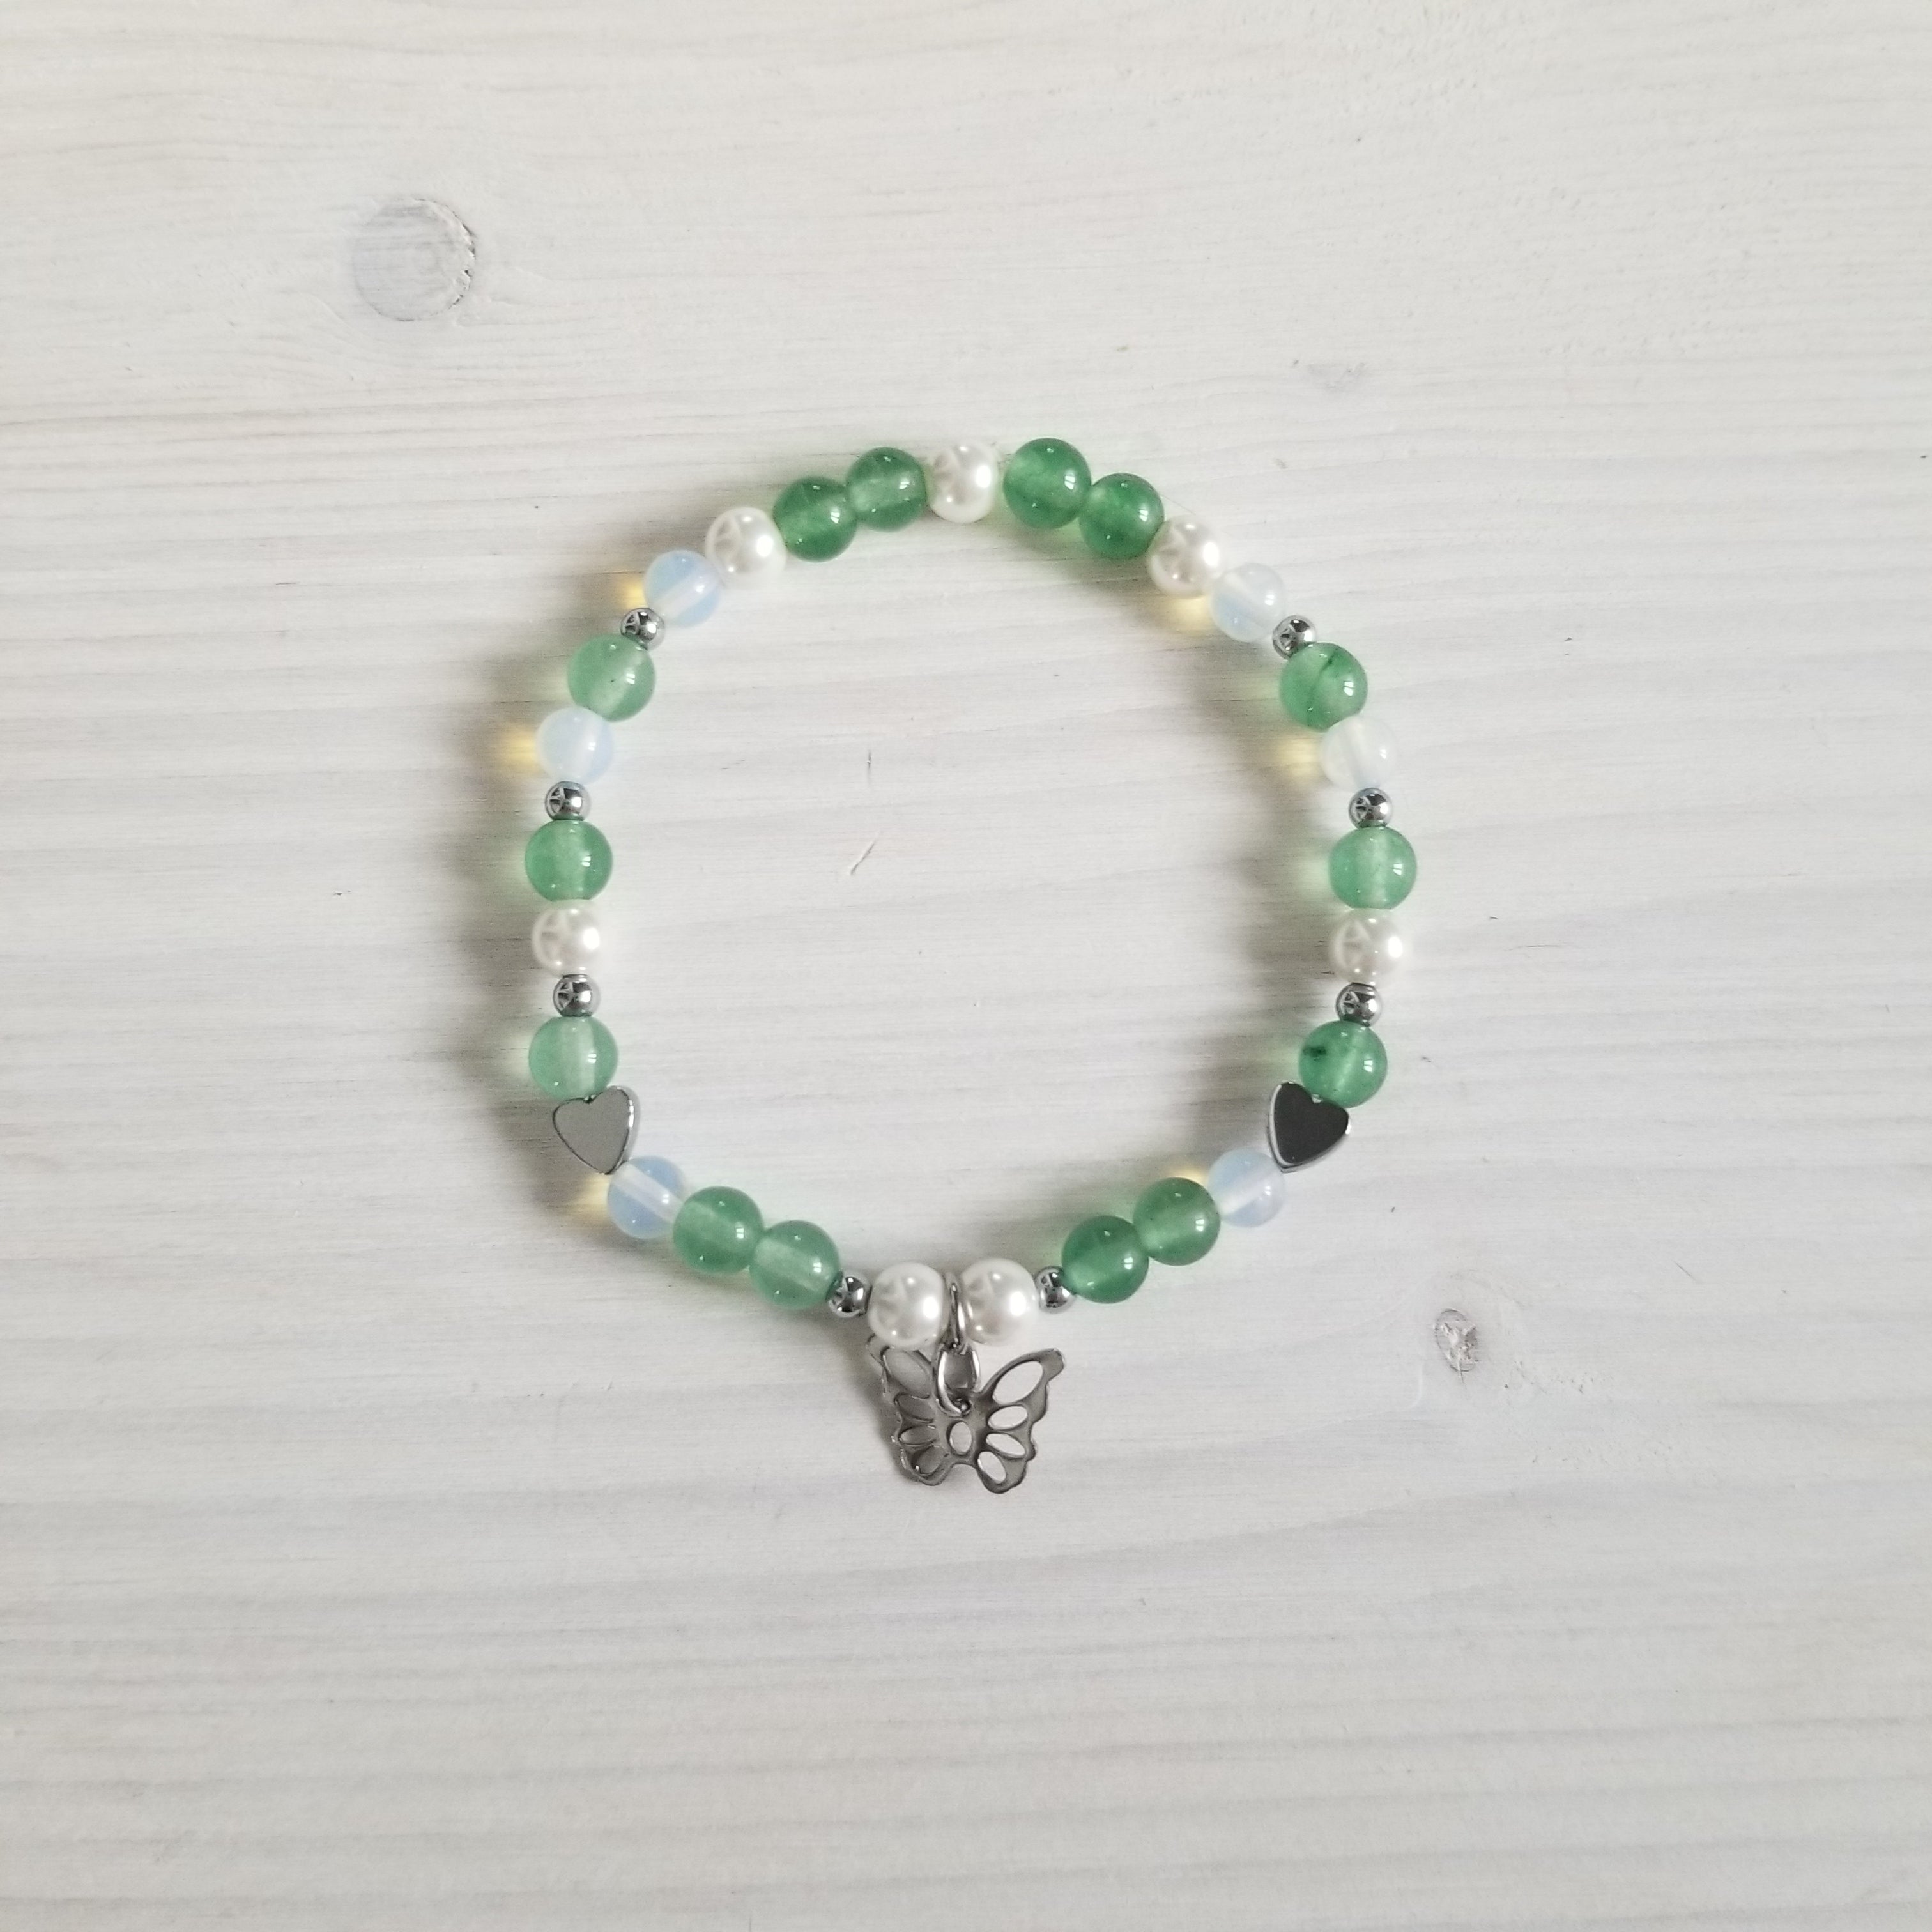 SOLDE 10$ - Bijoux Jadore - Bracelet en pierres semi-précieuses - Jade